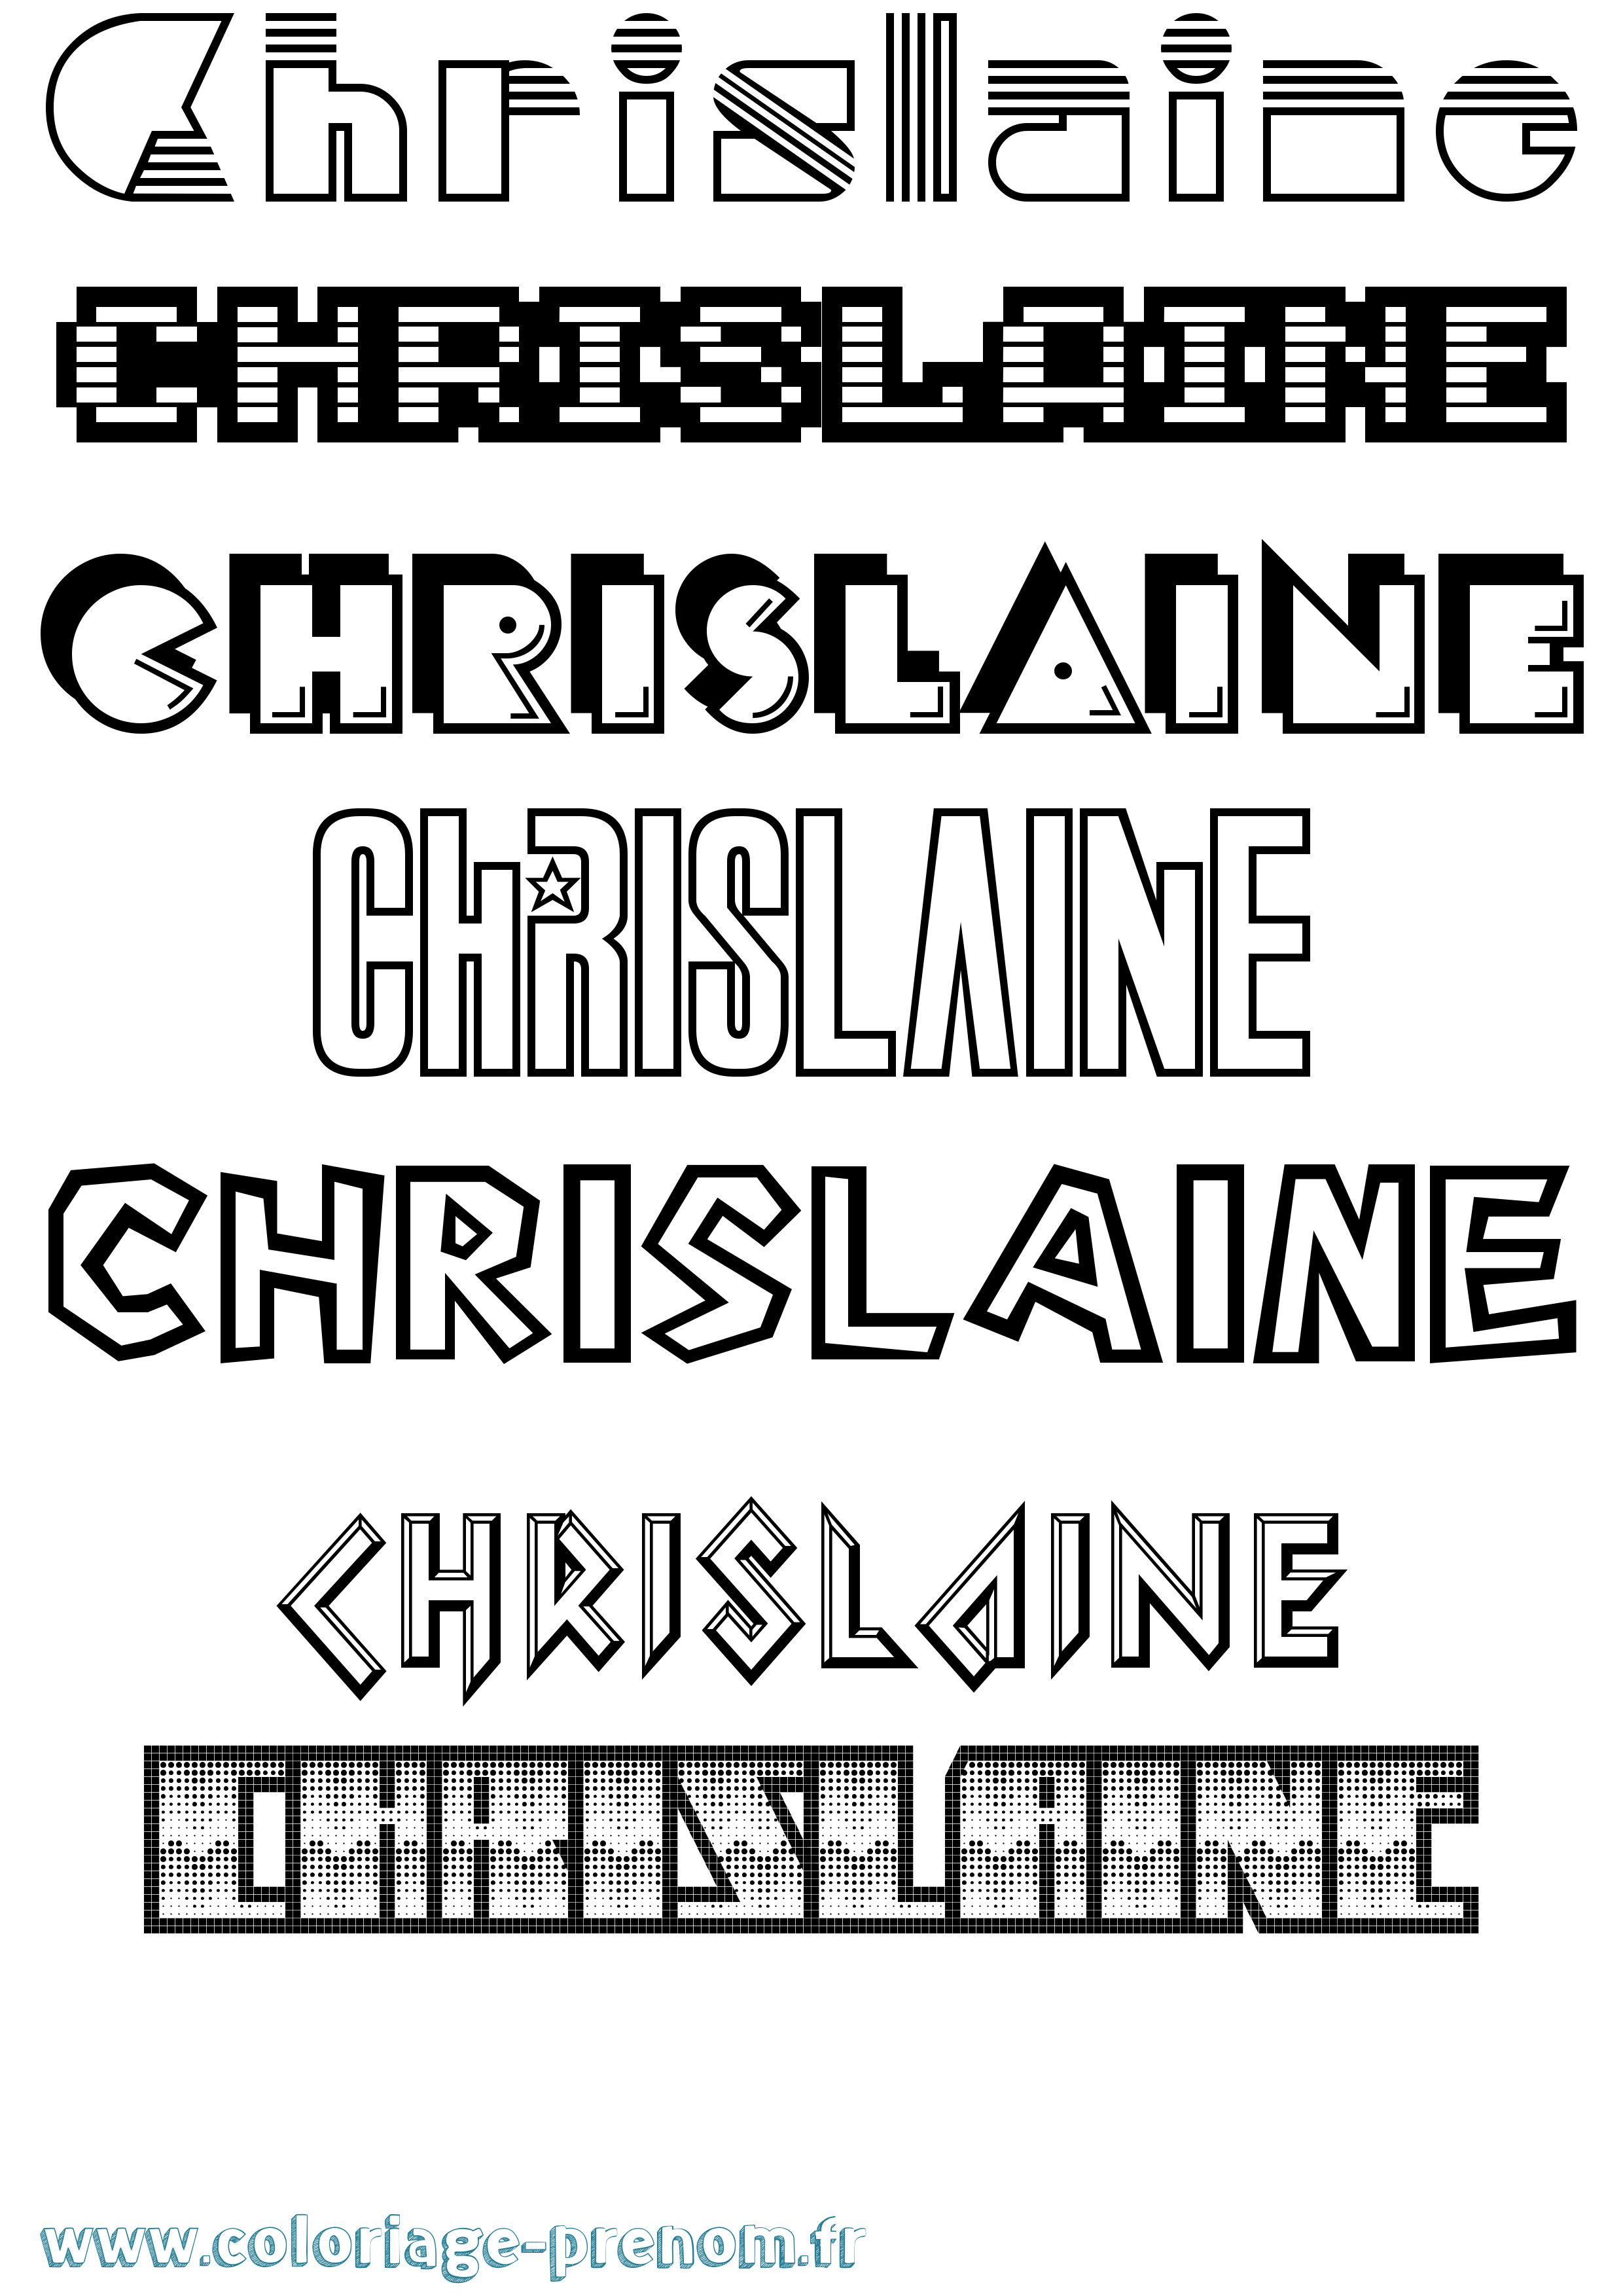 Coloriage prénom Chrislaine Jeux Vidéos